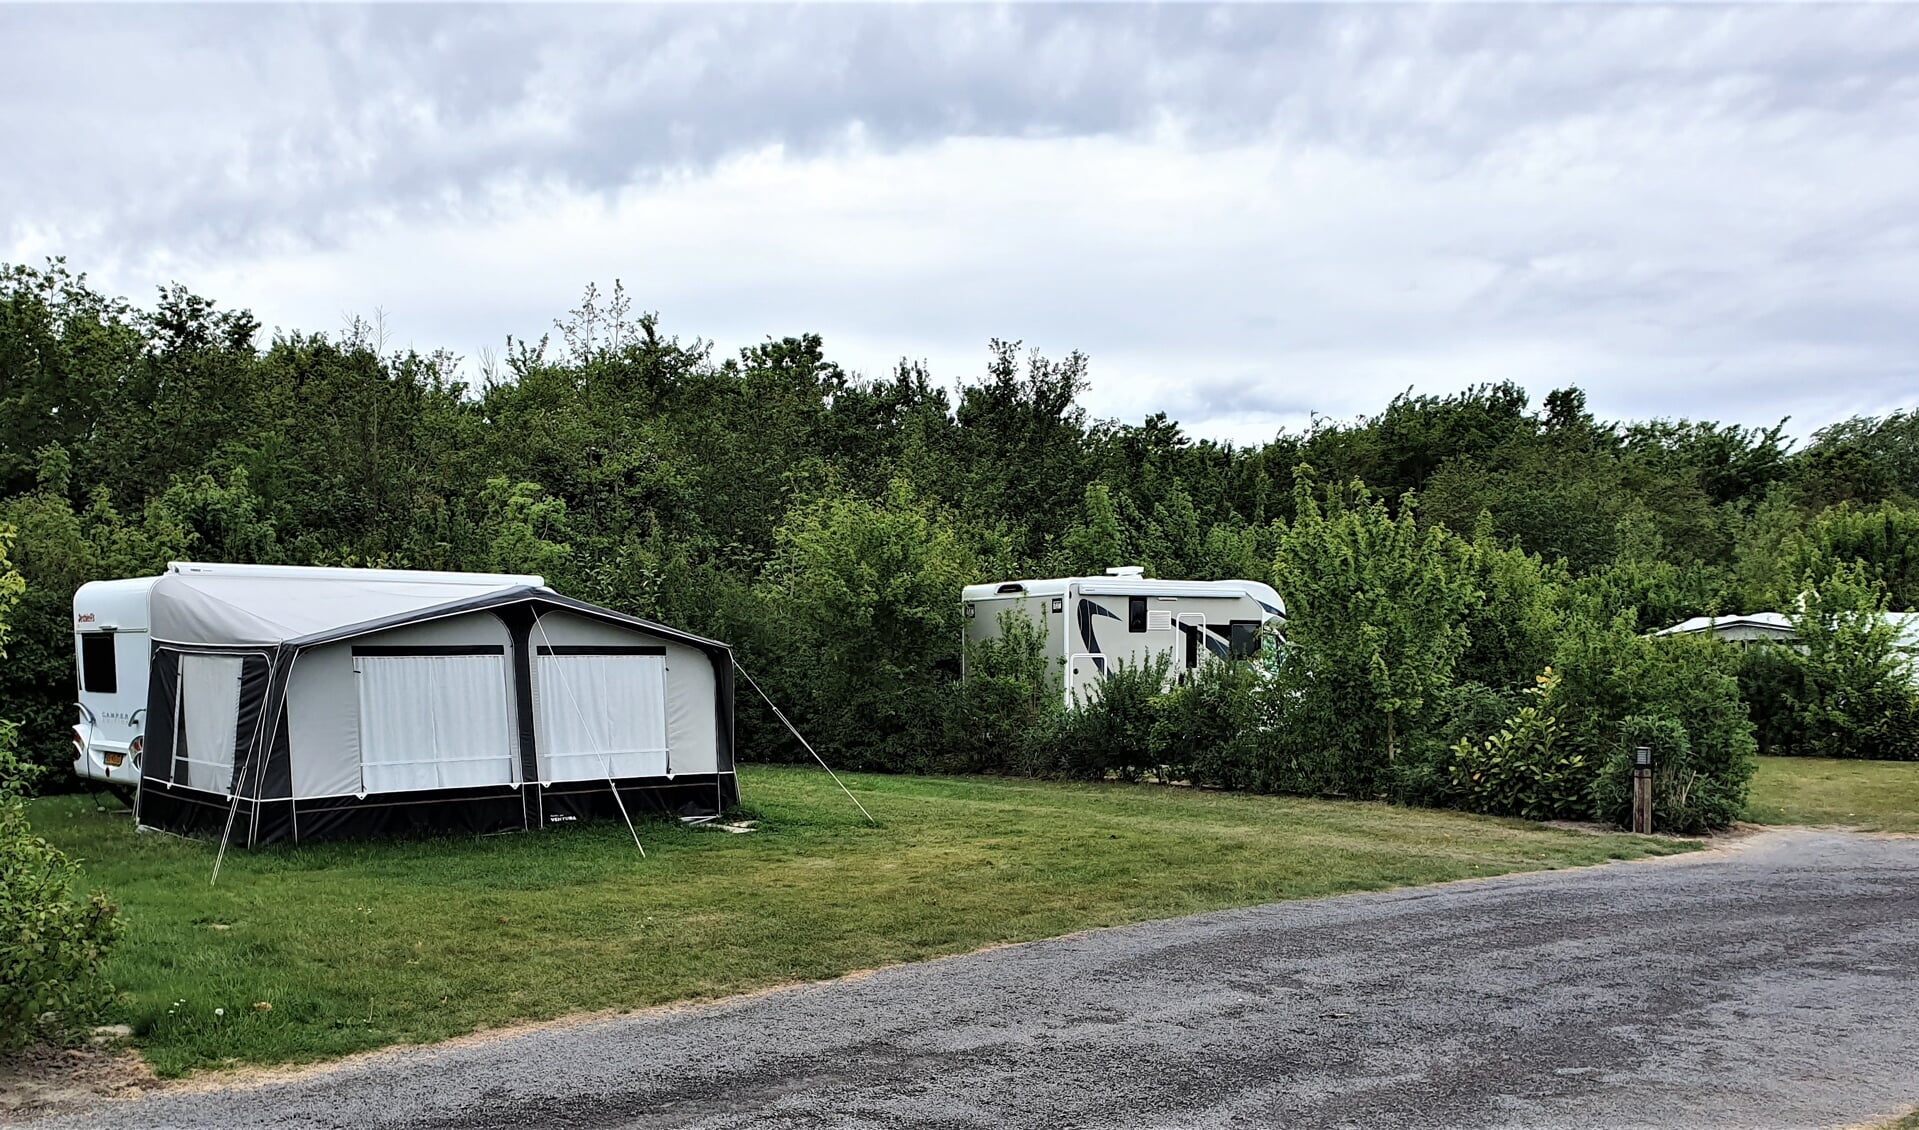 Kanperen op Camping Brouwersdam aan de Oudelandseweg in Ouddorp (Foto: Jaap Ruizeveld).